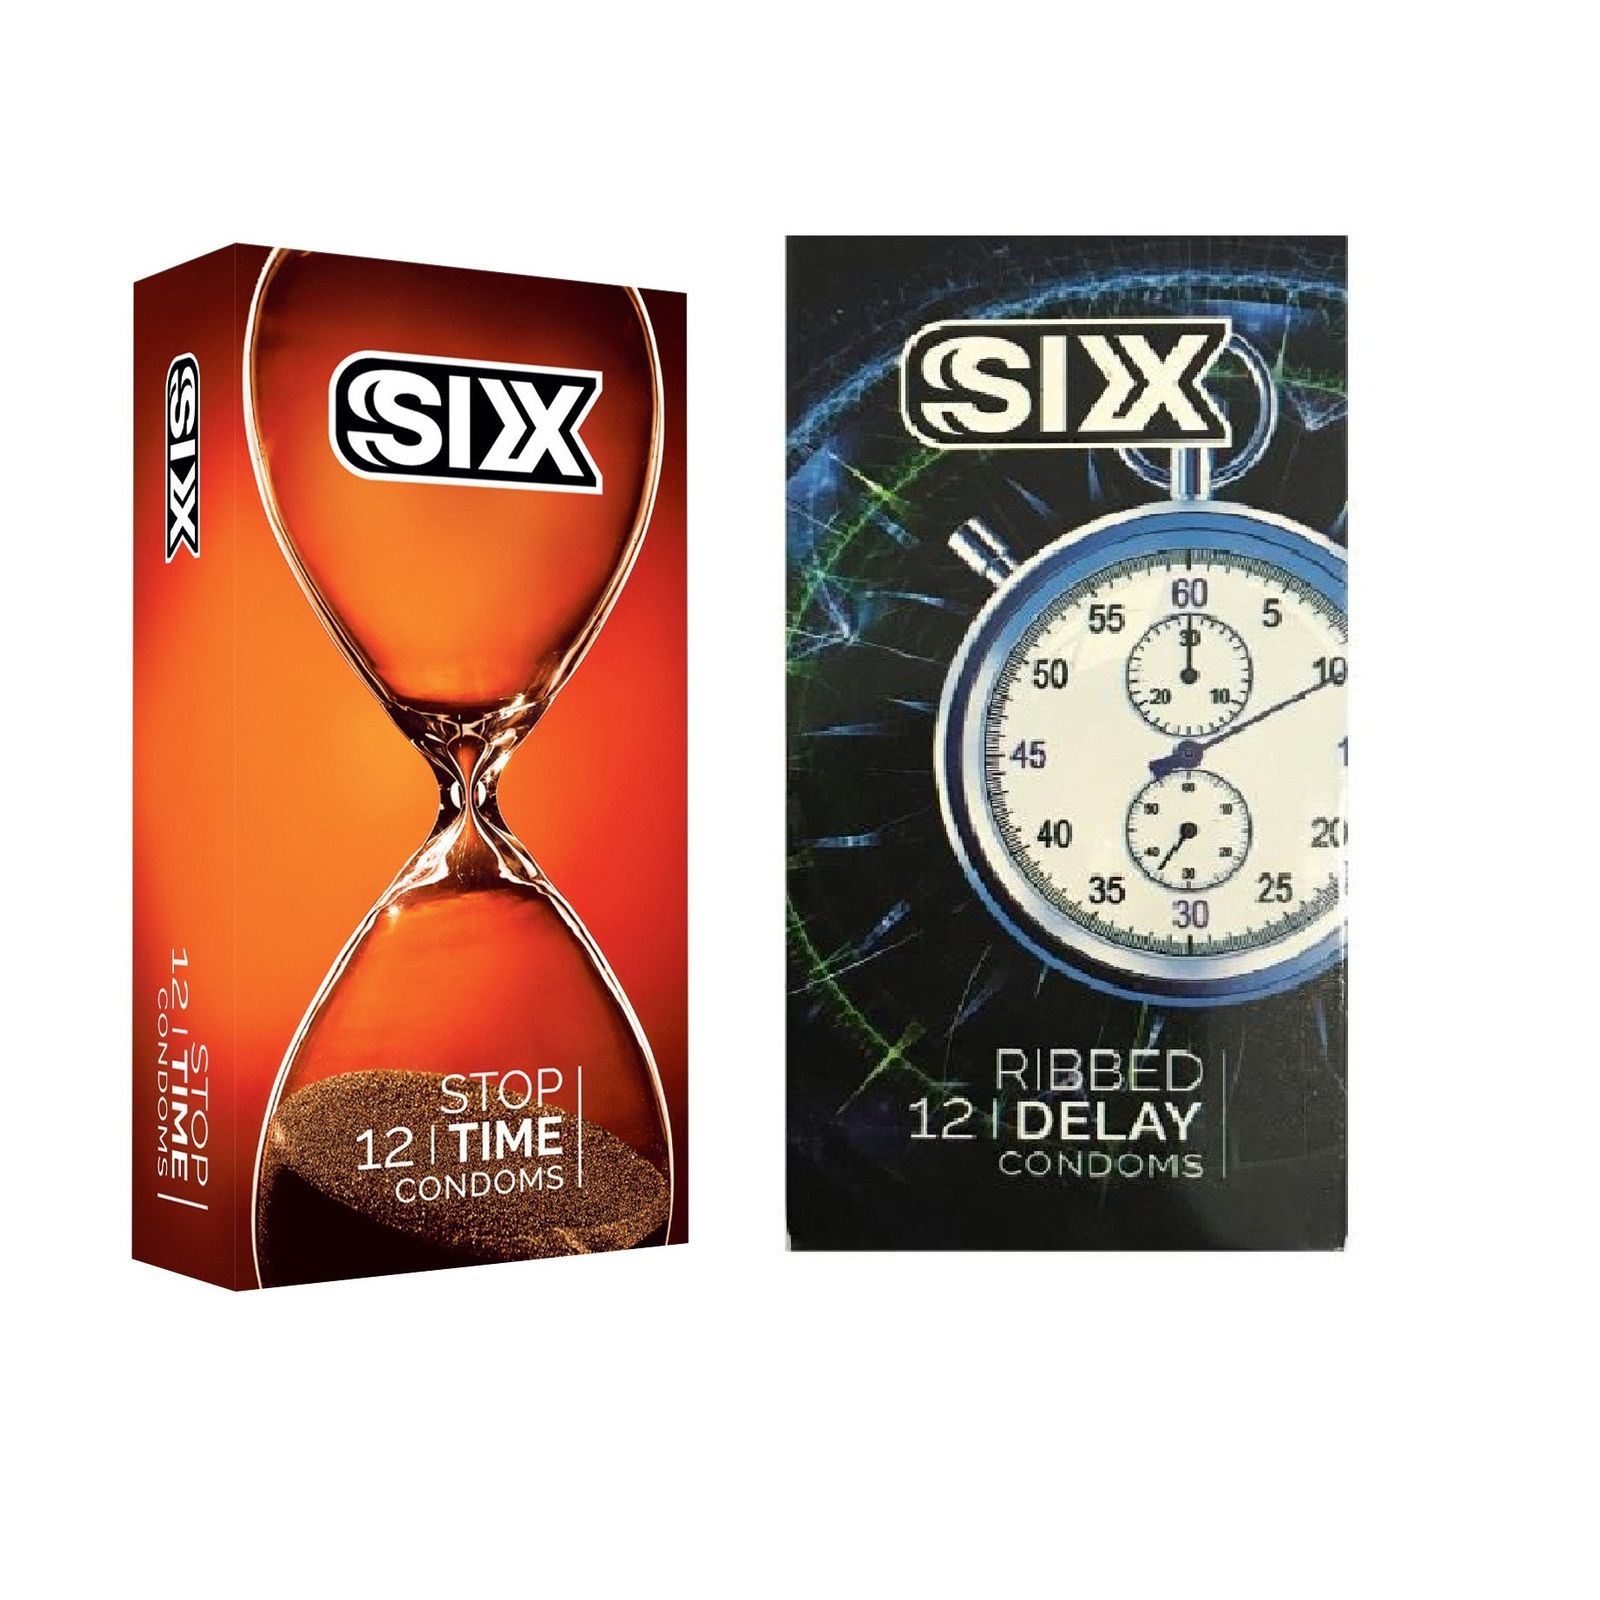 کاندوم سیکس مدل Stop Time بسته 12 عددی به همراه کاندوم سیکس مدل Ribbed Delay بسته 12 عددی -  - 1